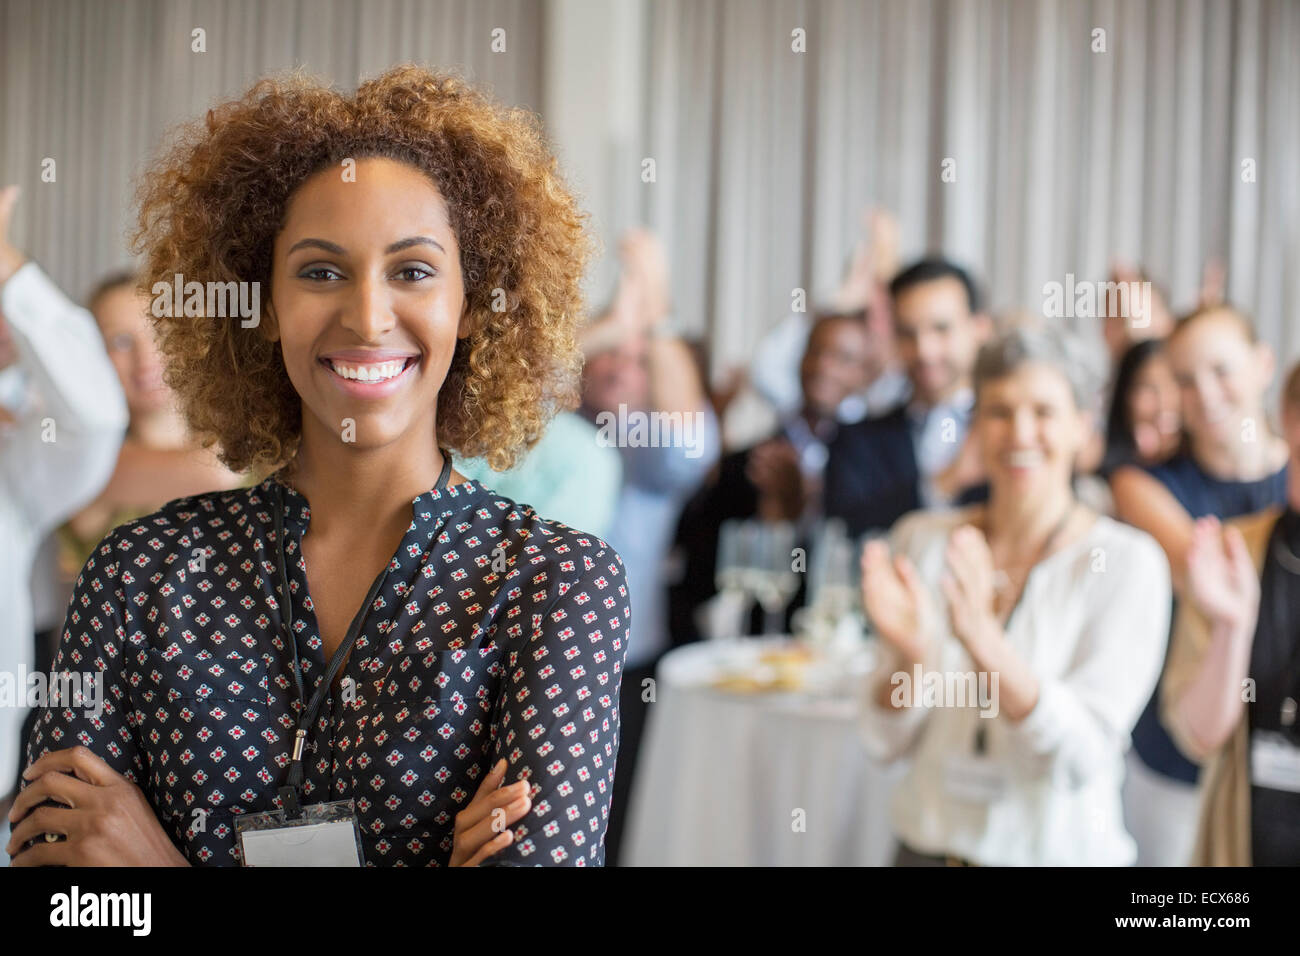 Porträt der lächelnde junge Frau im Konferenzraum mit Menschen applaudieren im Hintergrund Stockfoto